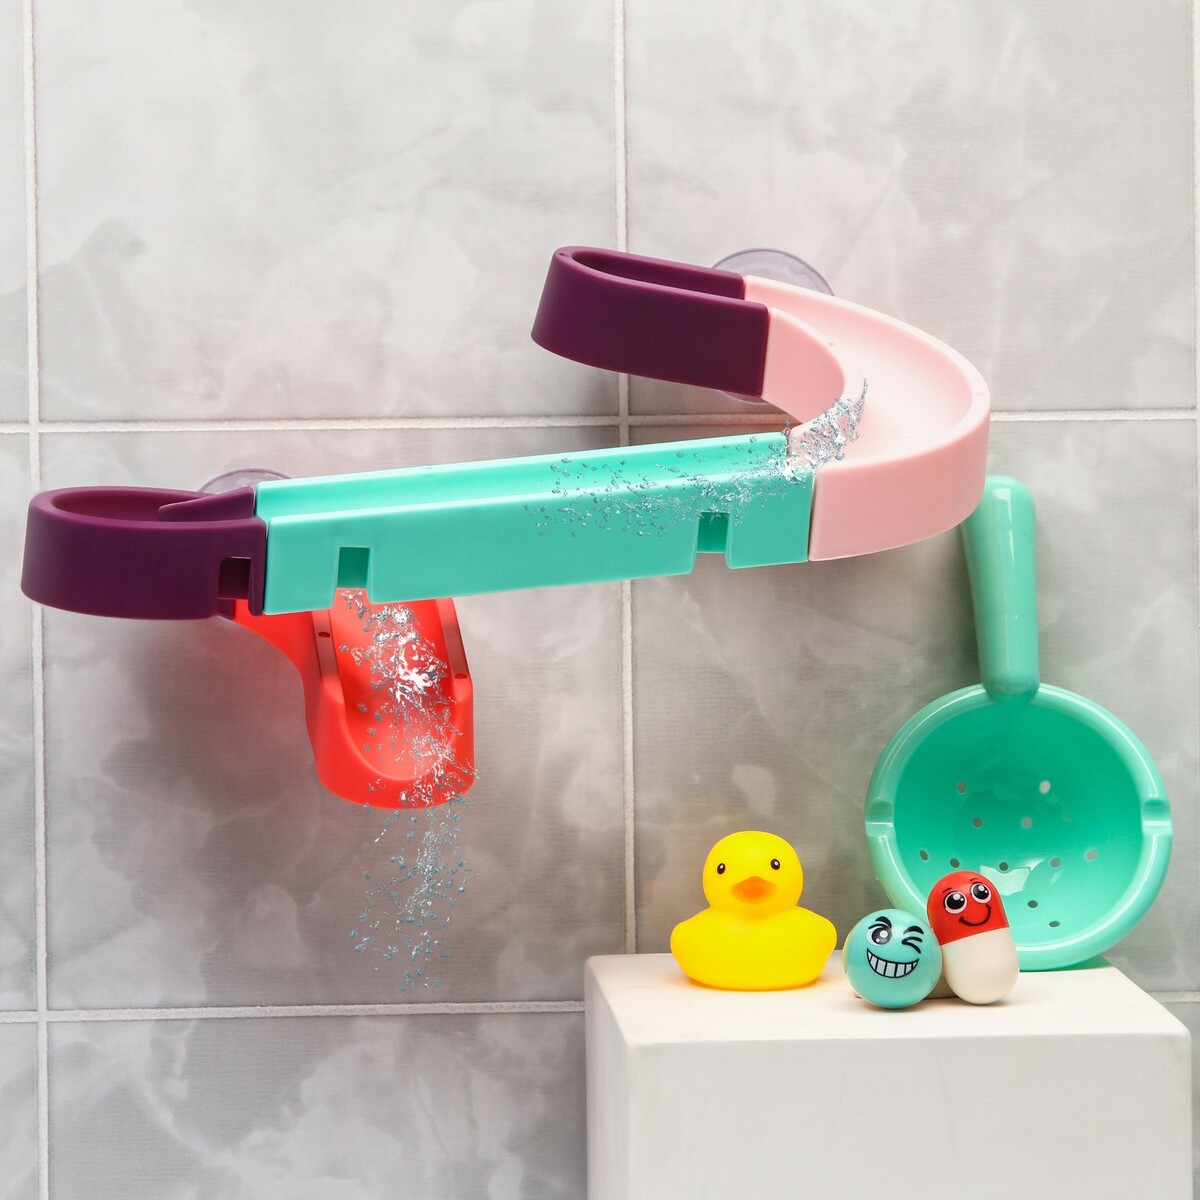 Игрушка водная горка для игры в ванной, конструктор, набор на присосках детский набор для купания how to home ванночка горка ковш для купания новорожденных